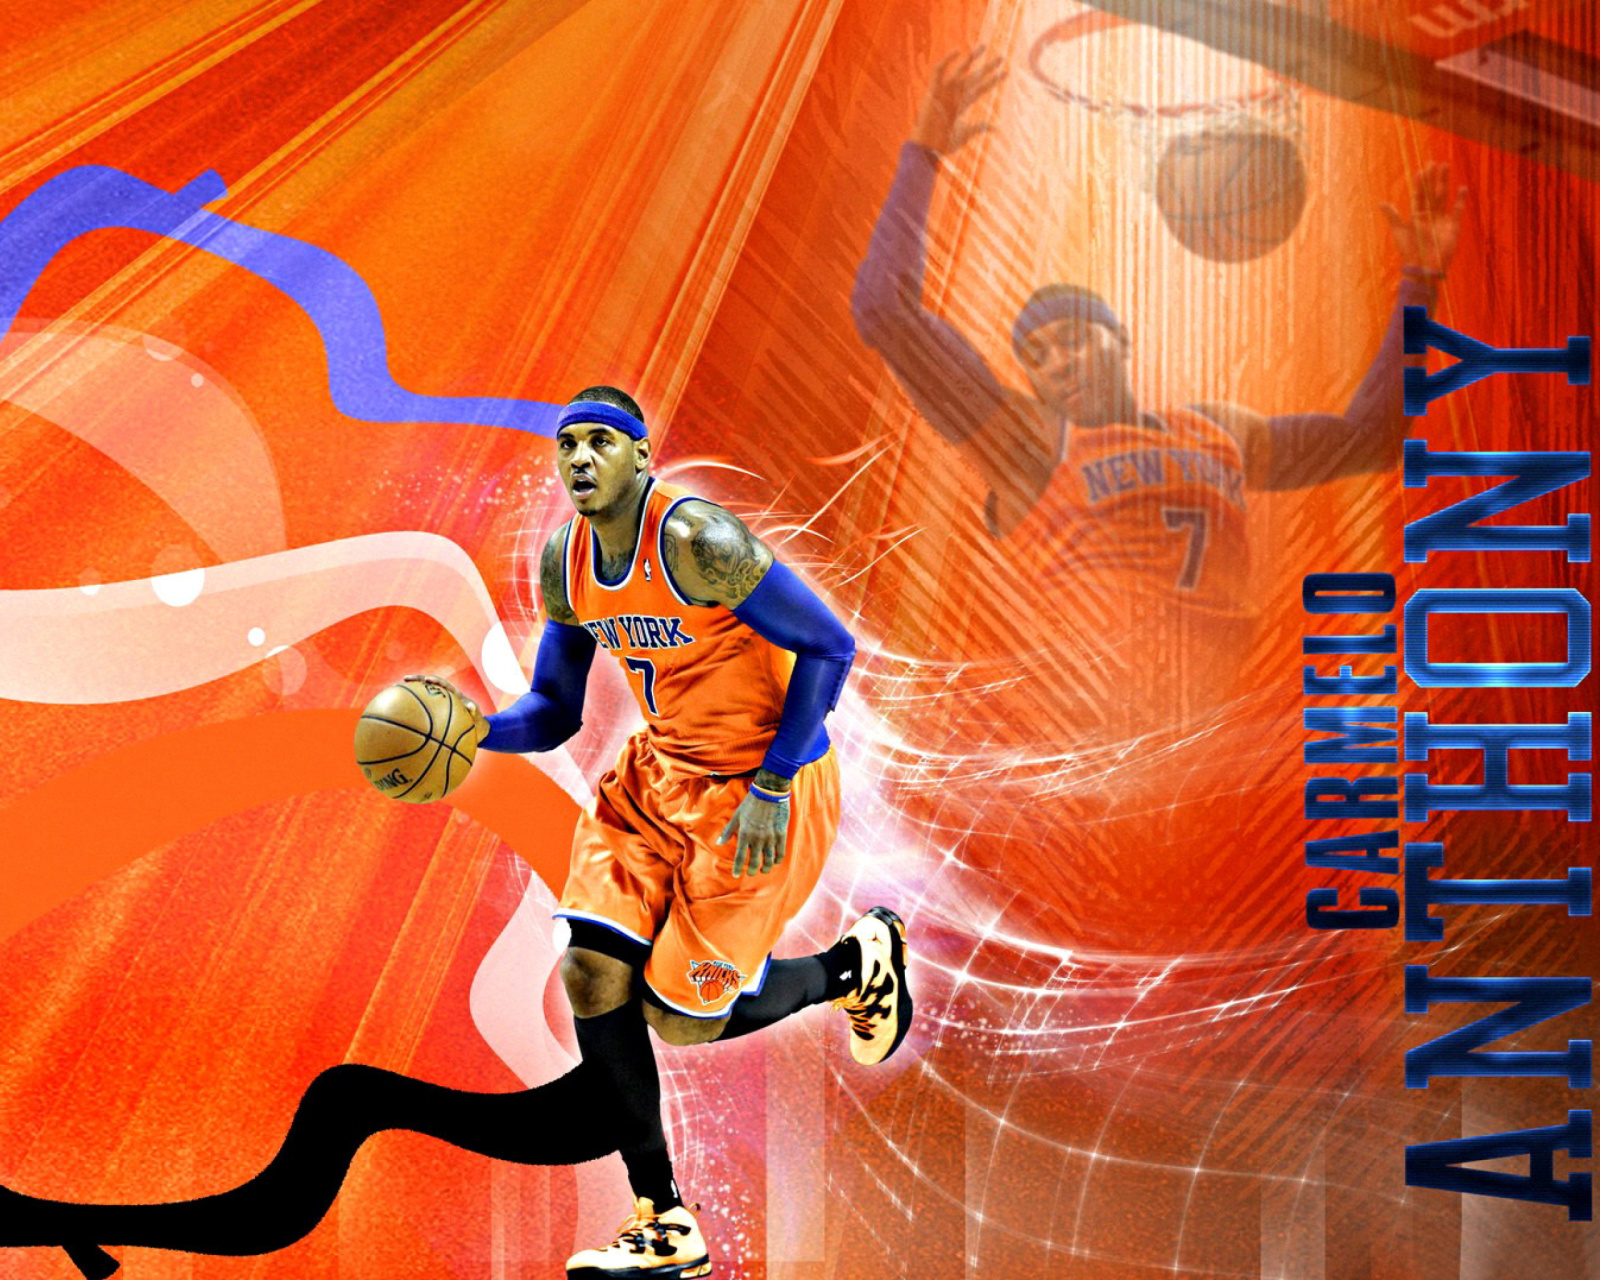 Das Carmelo Anthony NBA Player Wallpaper 1600x1280